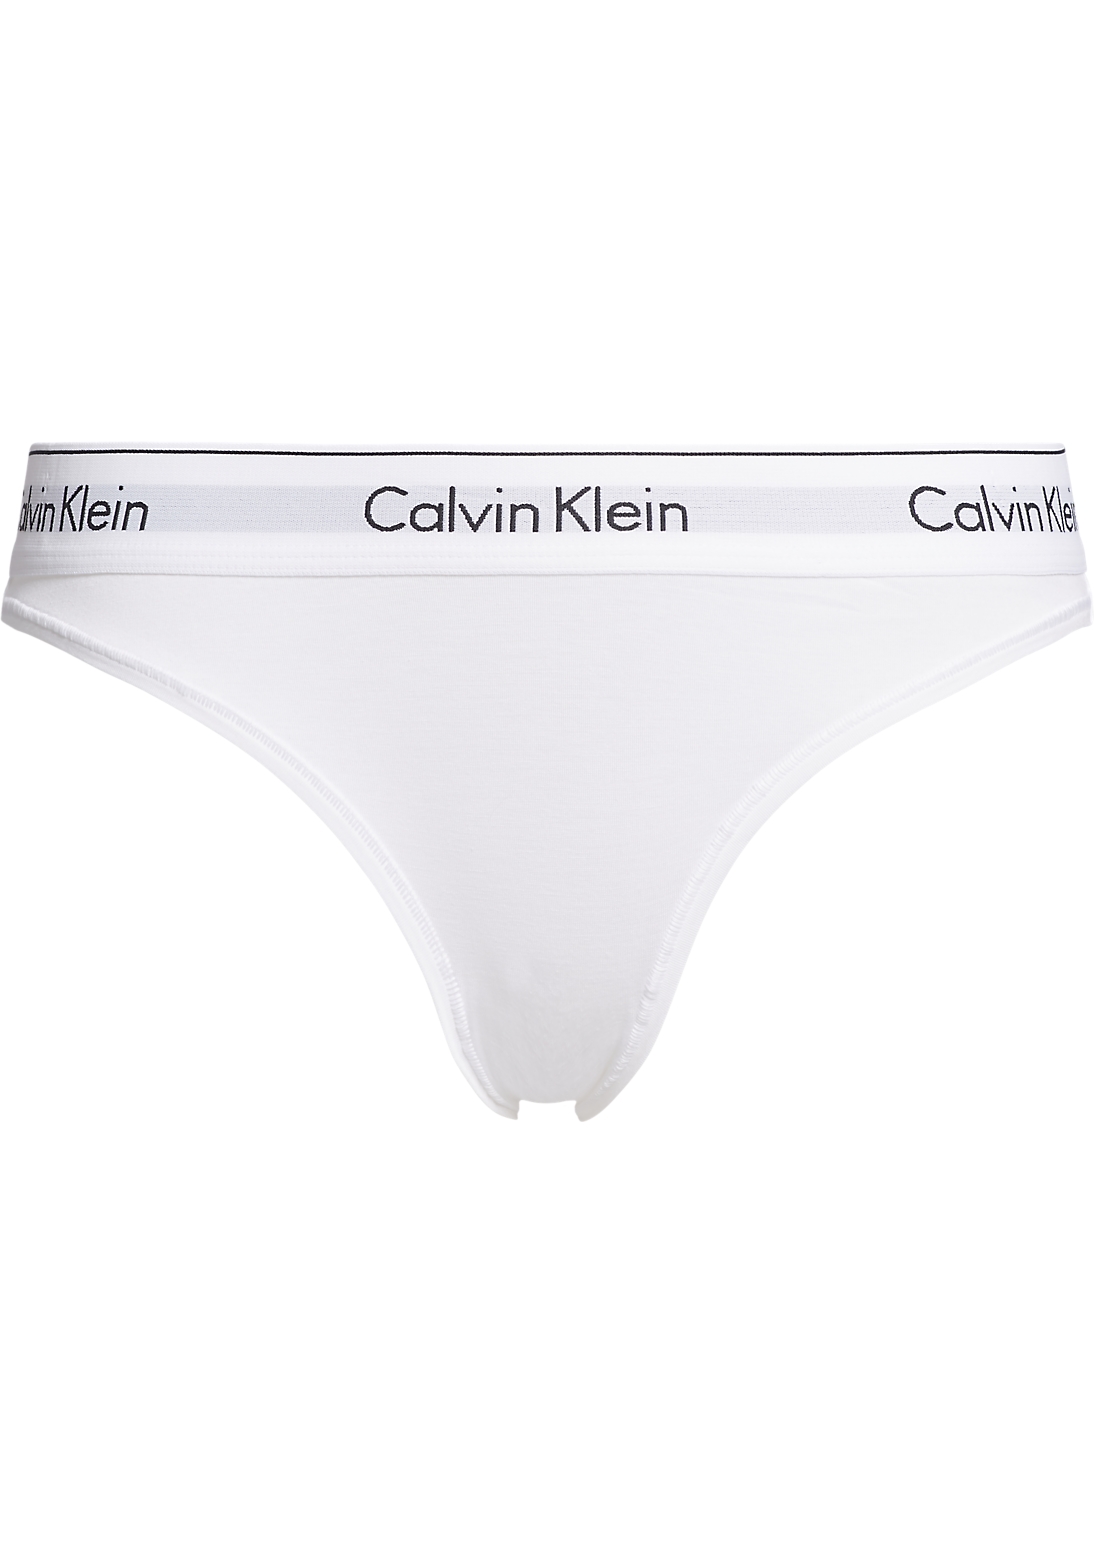 seinpaal Bewijzen willekeurig Calvin Klein dames Modern Cotton slip, wit - Shop de nieuwste voorjaarsmode